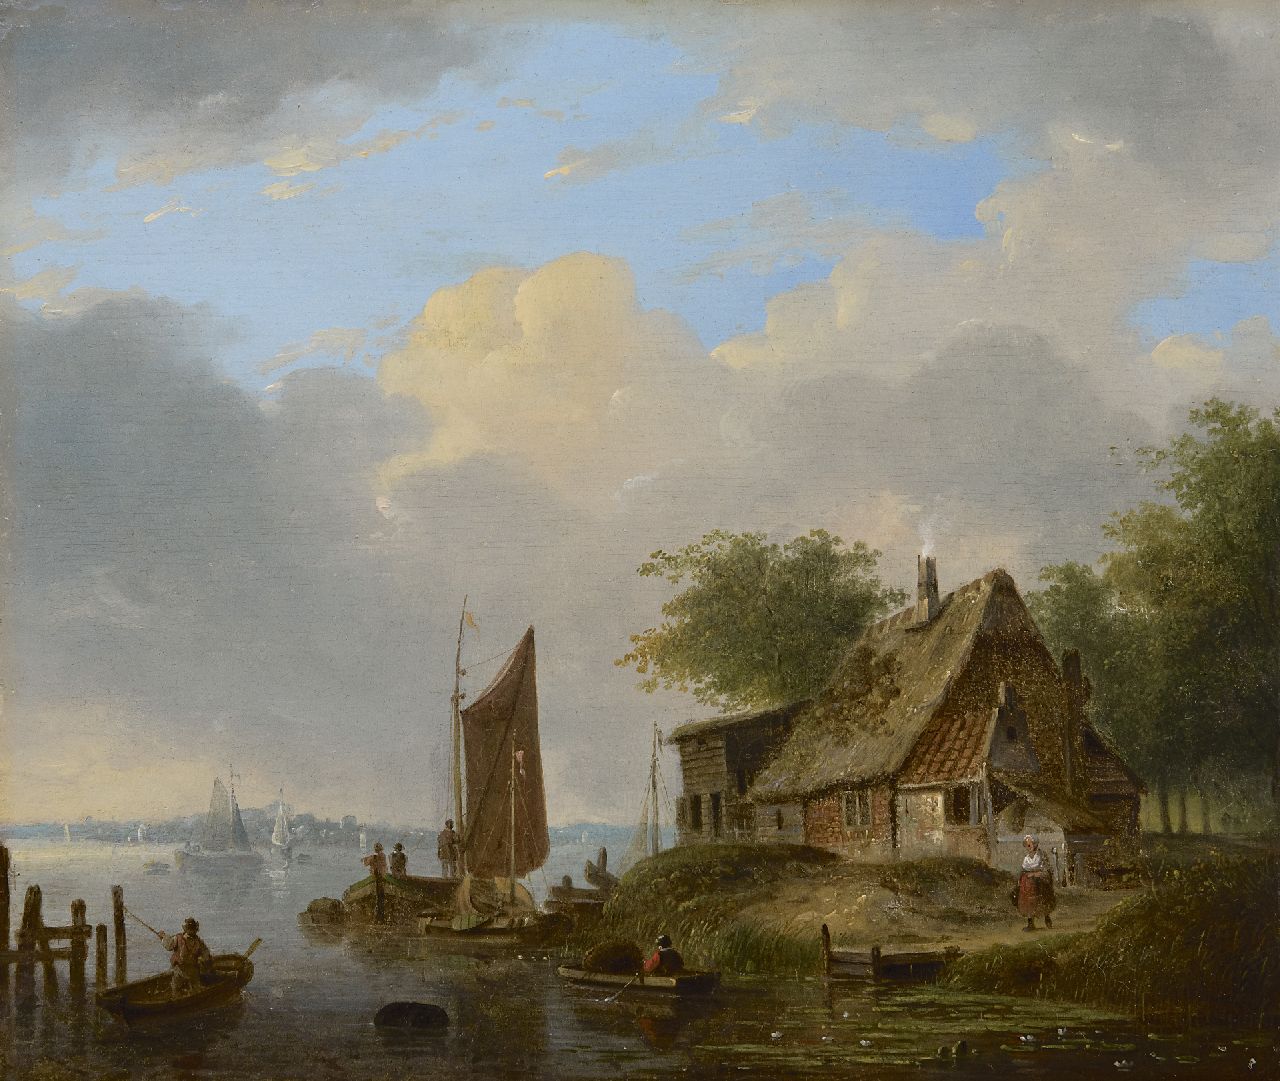 Stok J. van der | Jacobus van der Stok, Sommerliche Aussicht auf einen Kanal, Öl auf Holz 26,6 x 31,7 cm